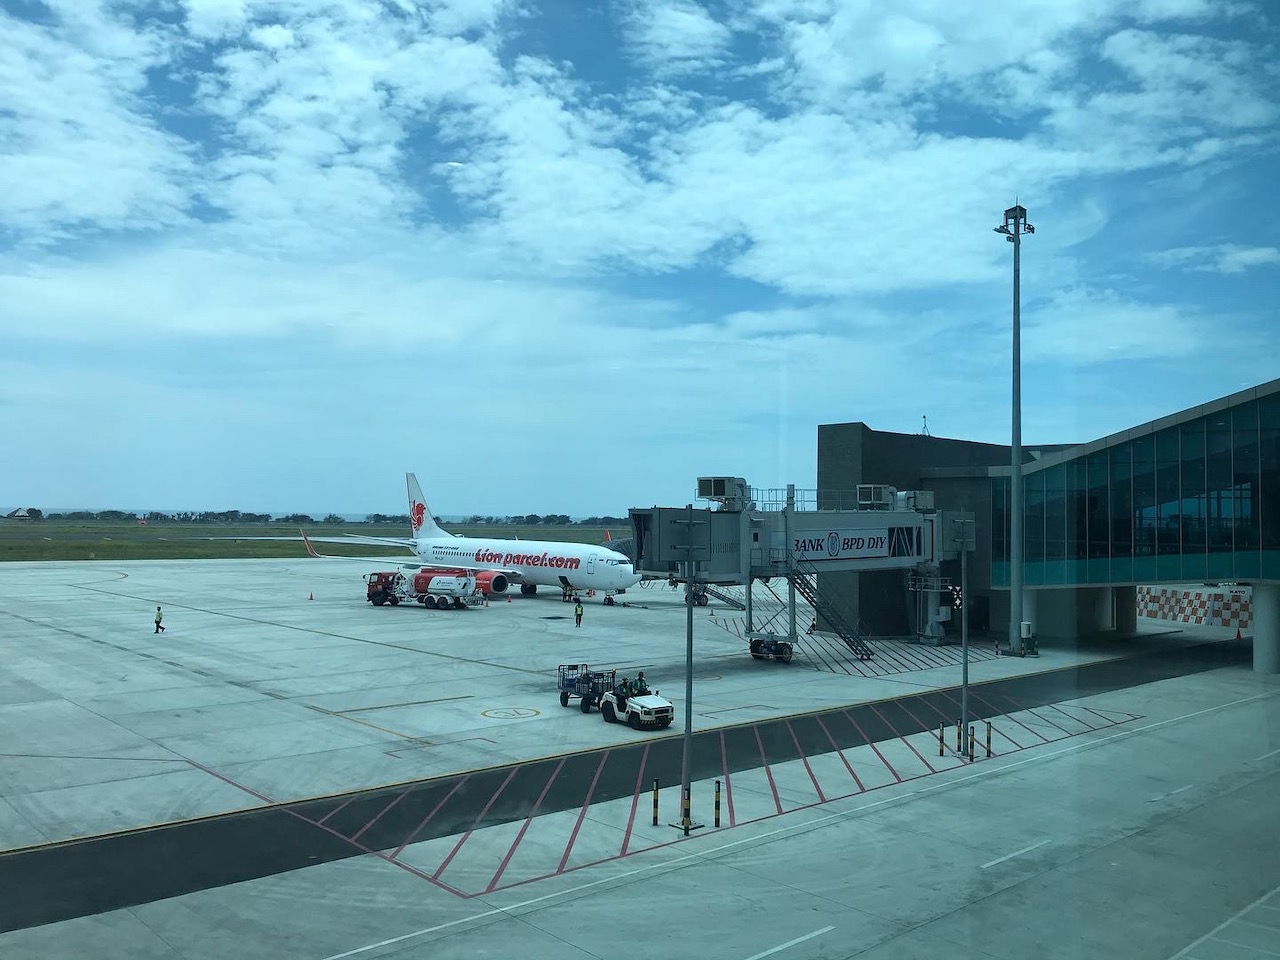 Yogyakarta International Airport